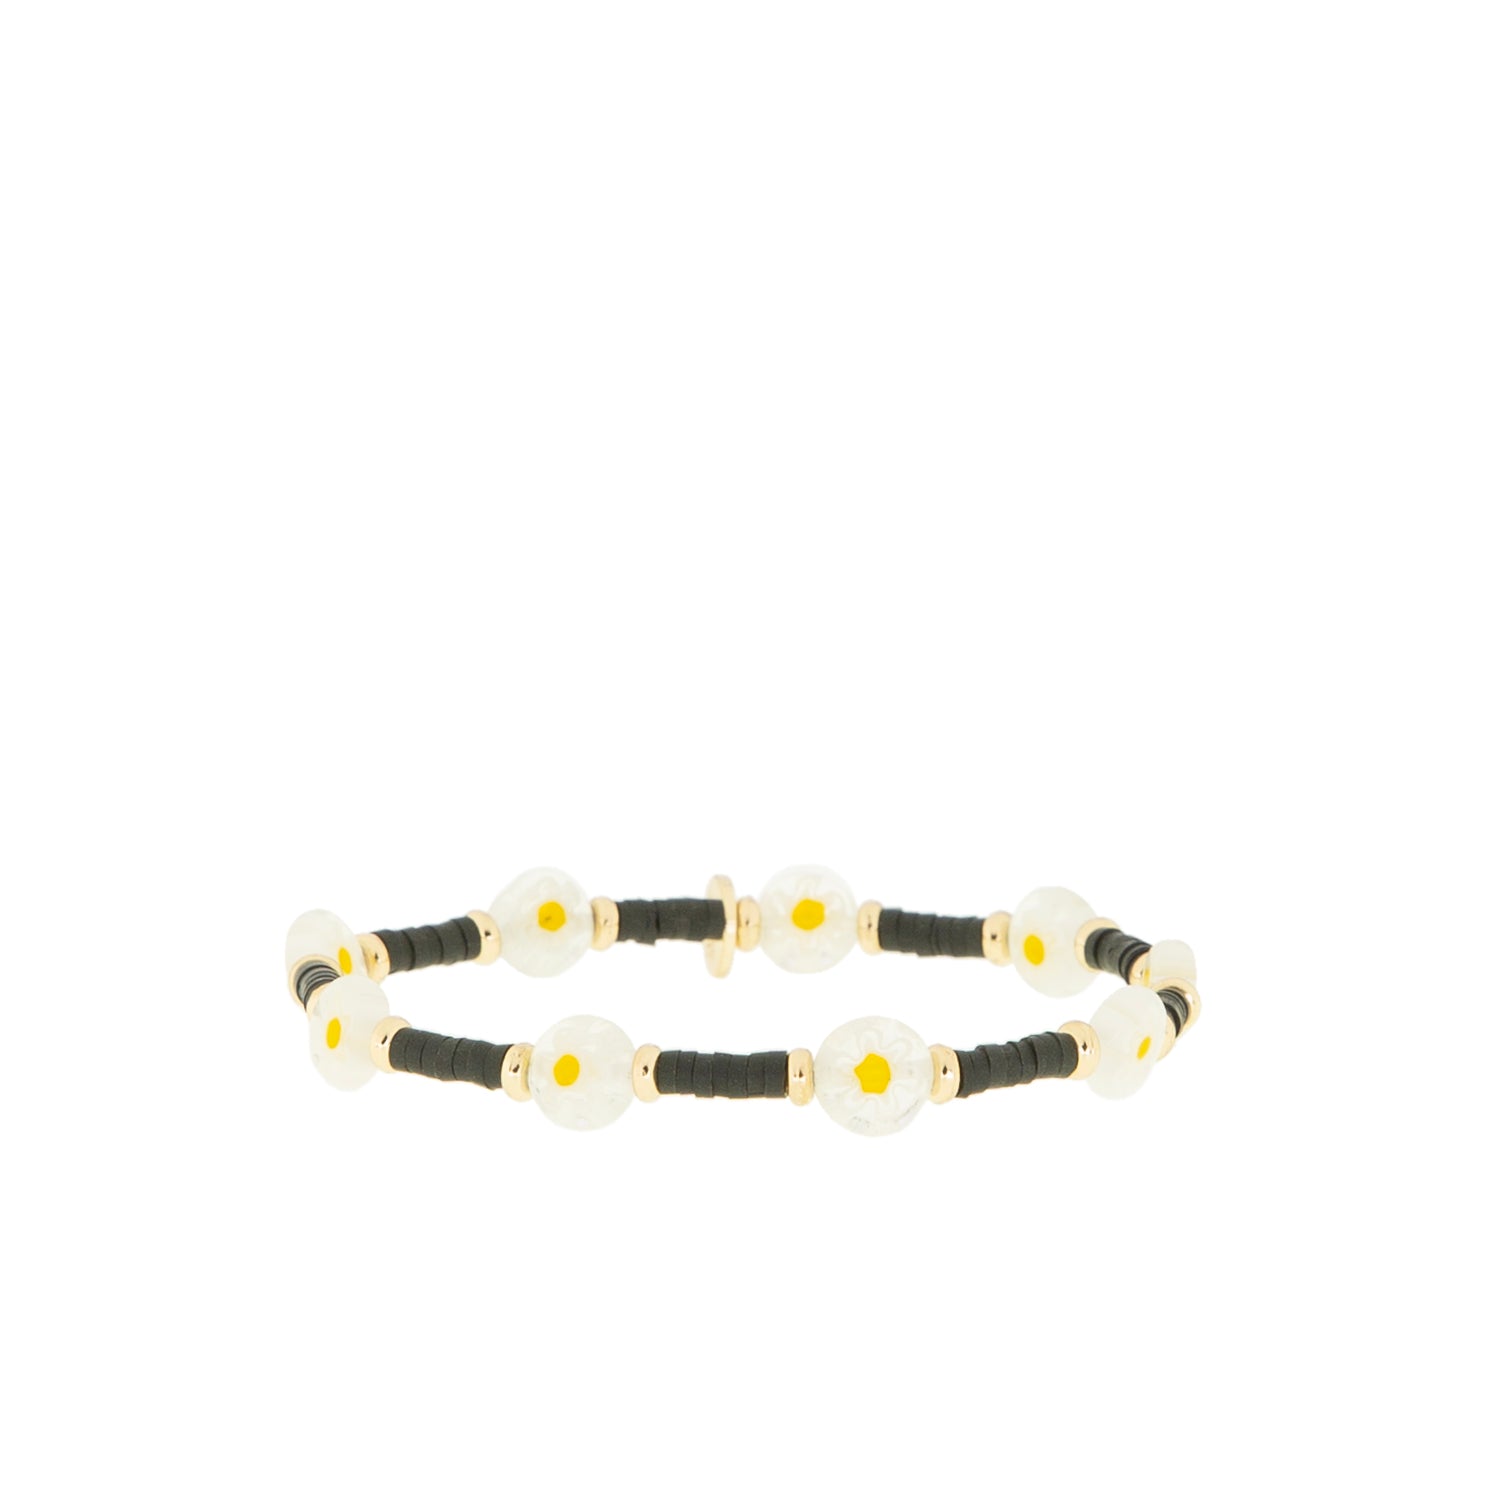 mini heishi stretch bracelet with glass beads